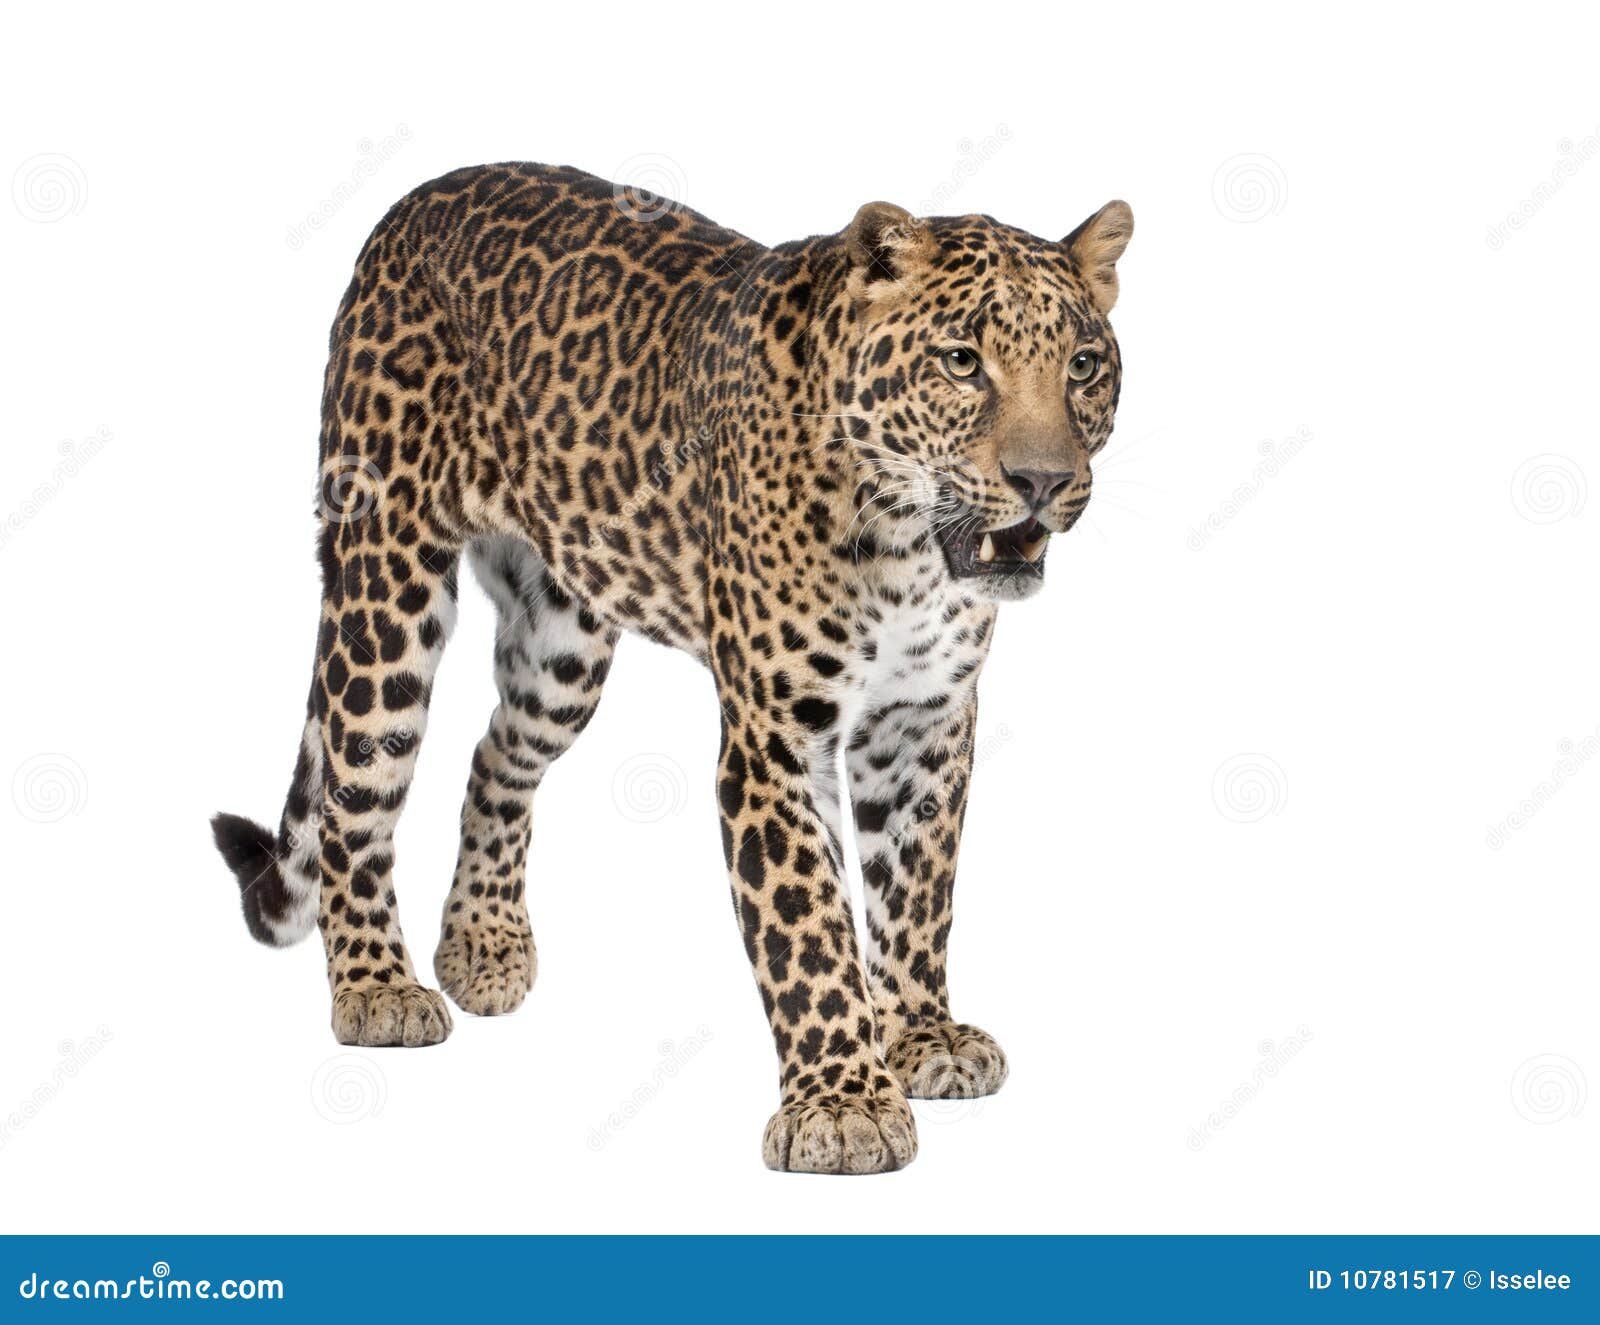 portrait of leopard, panthera pardus, standing